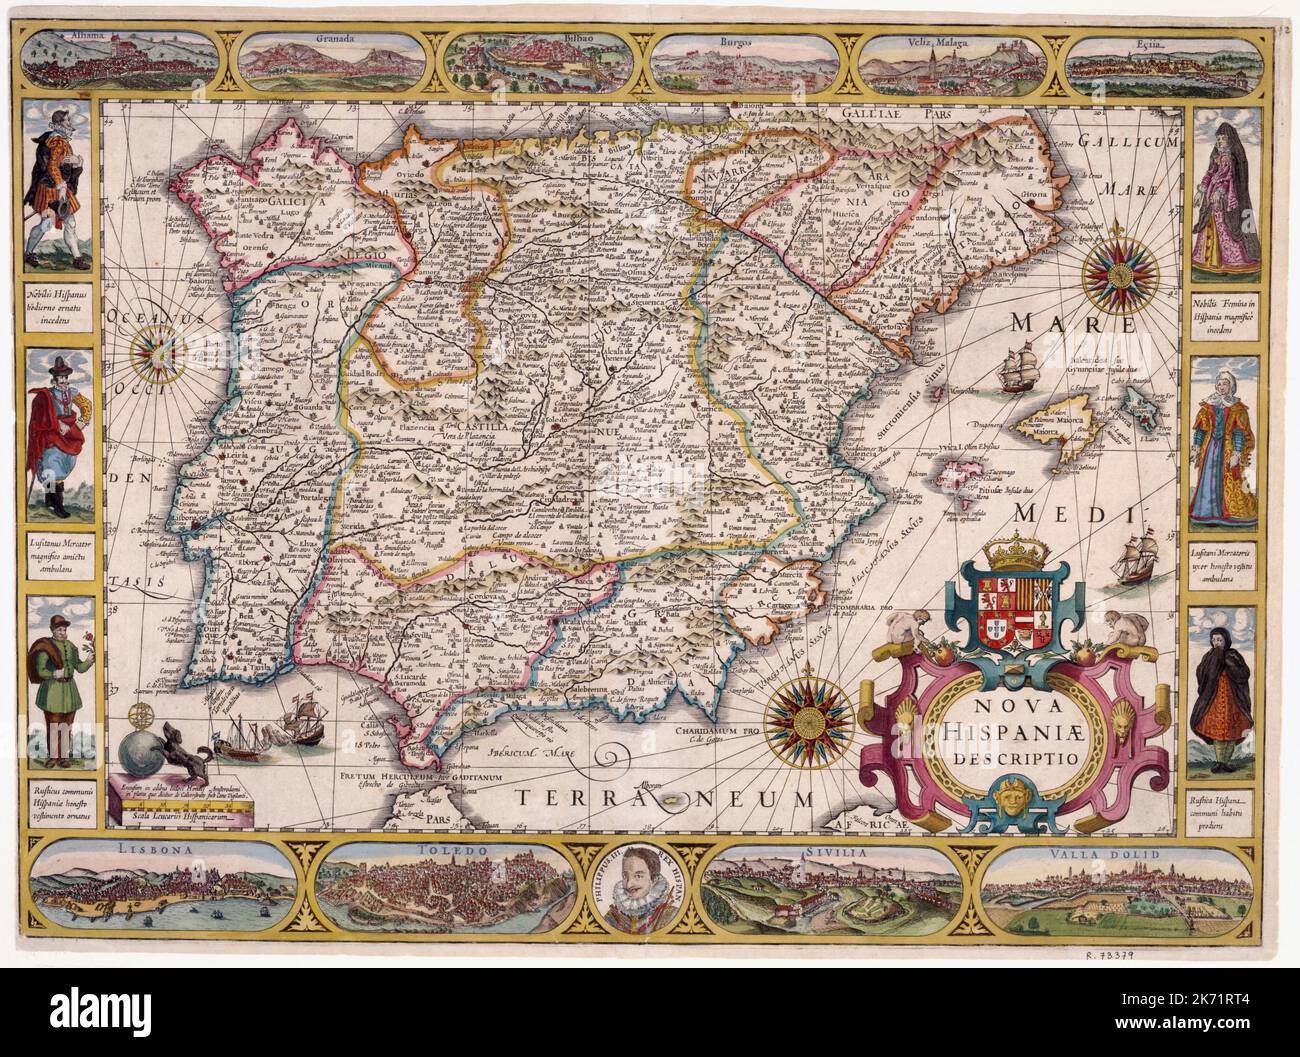 Carte illustrée vintage de l'Espagne et du Portugal avec des cartouts ca.1610 par l'imprimeur flamand Jodocus Hondius, basée sur une plaque faite par Gerardus Mercator Banque D'Images